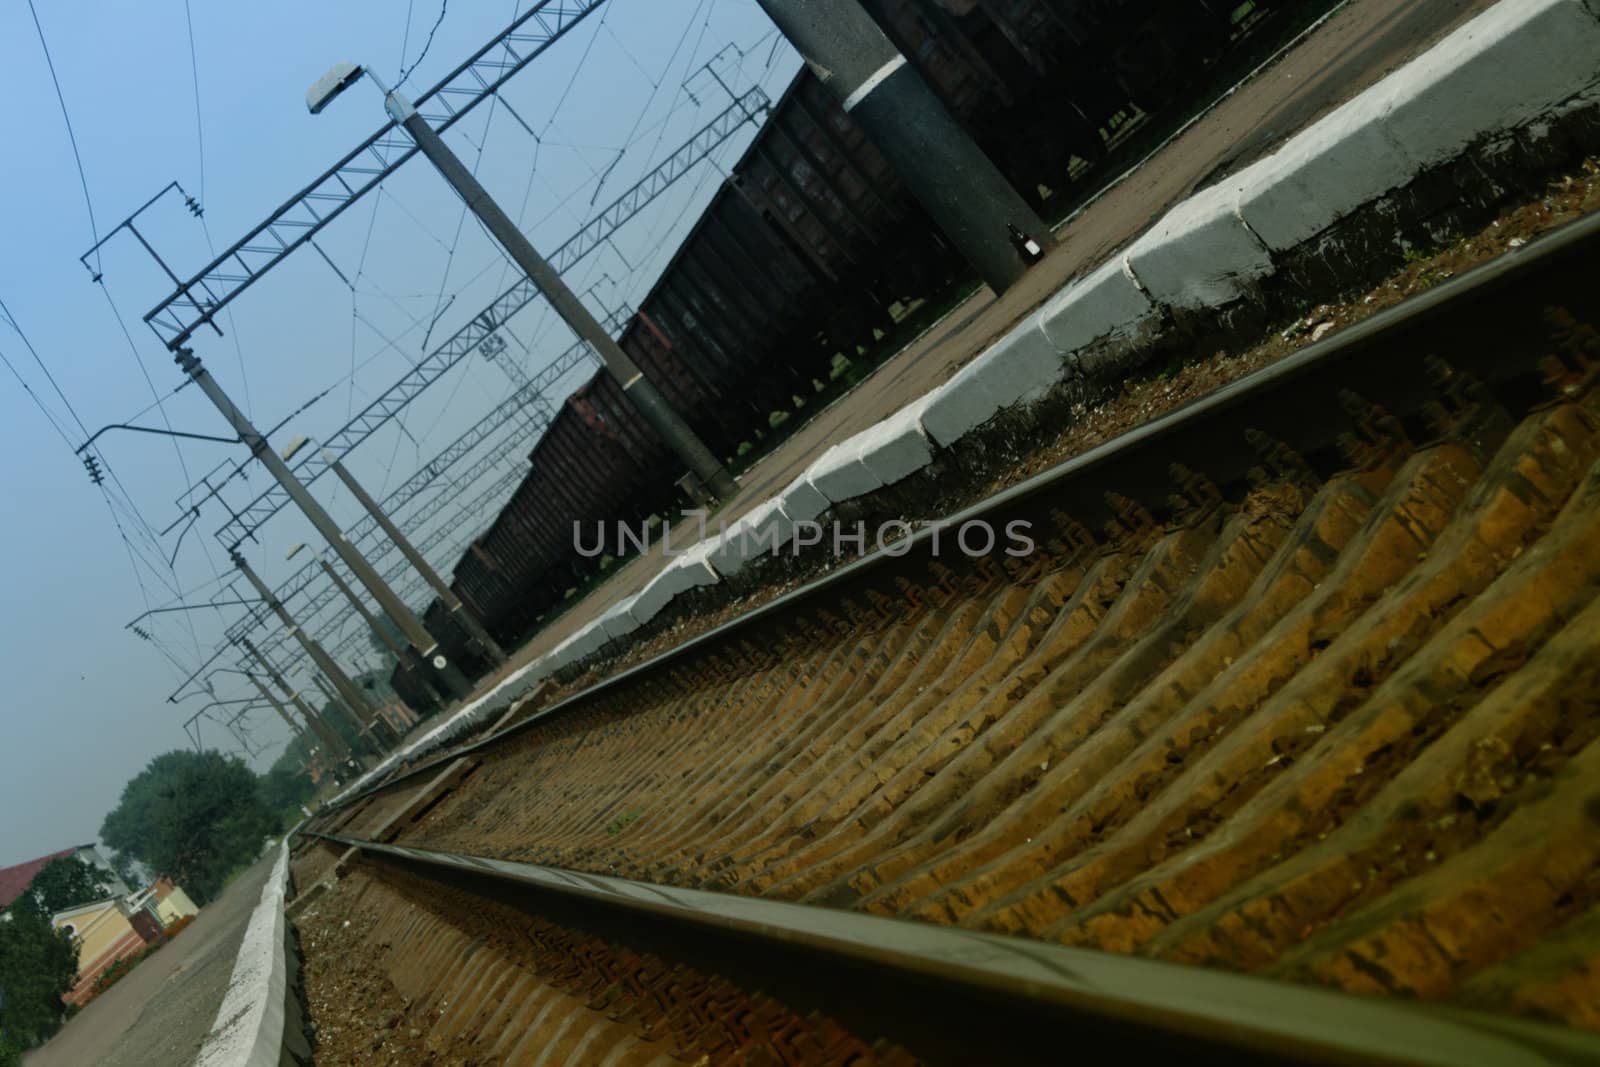 Railway station by KadunmatriX